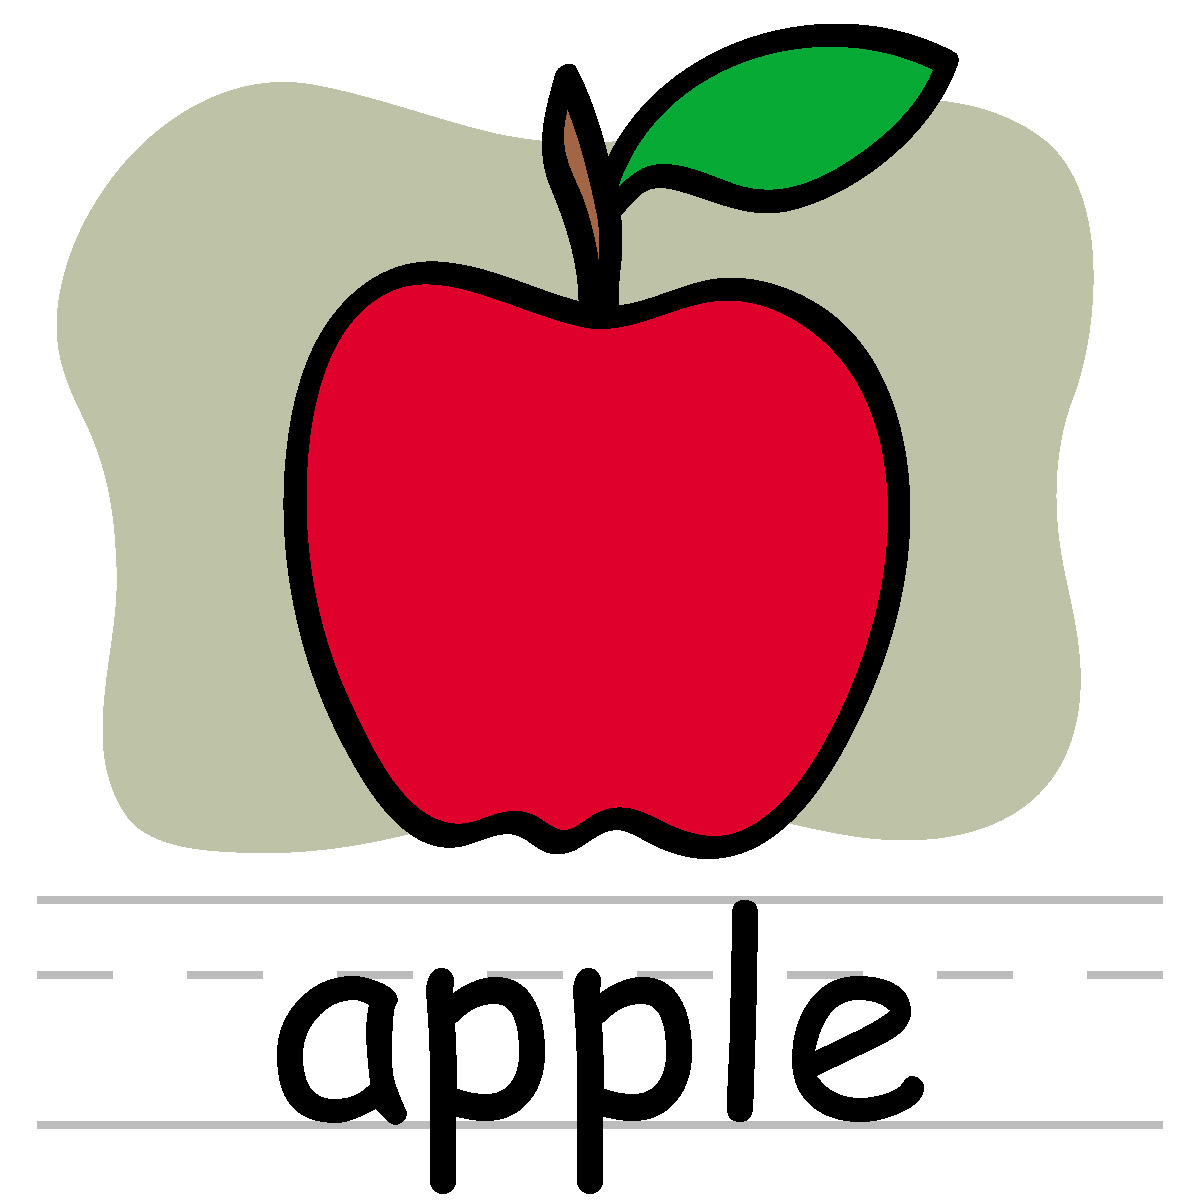 Teacher Apple Clip Art - ClipArt Best